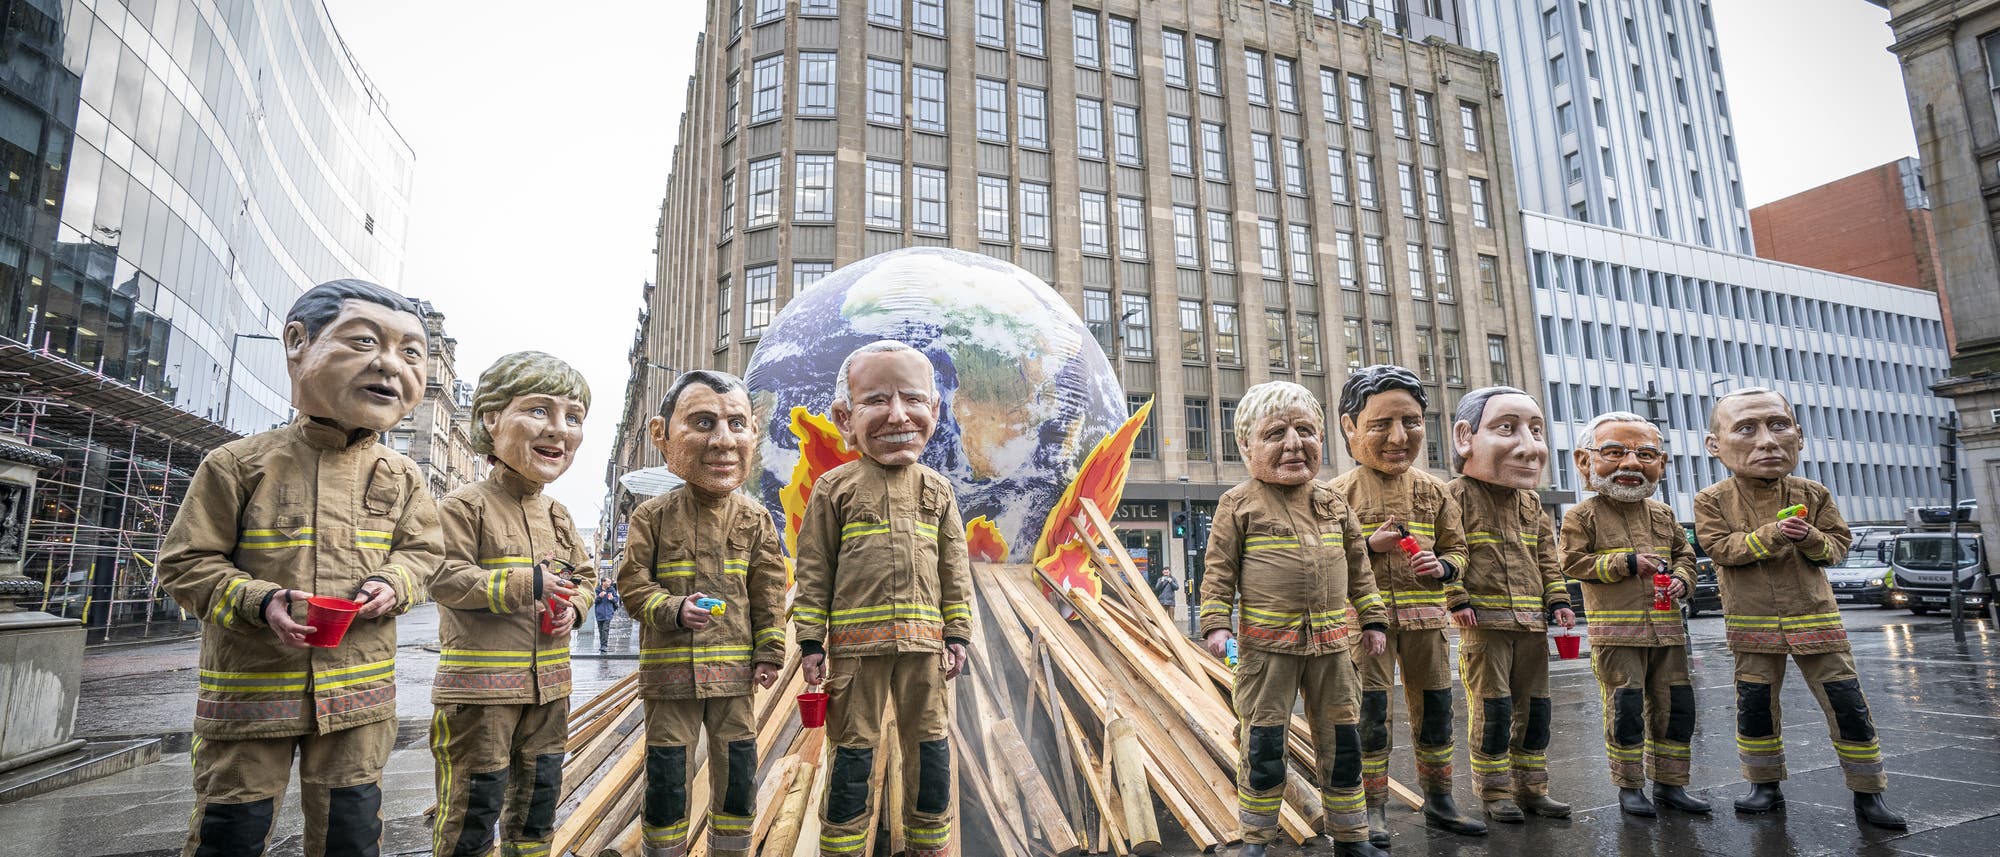 Protest während des Klimagipfels - Demonstranten stecken die Welt symbolisch in Brand